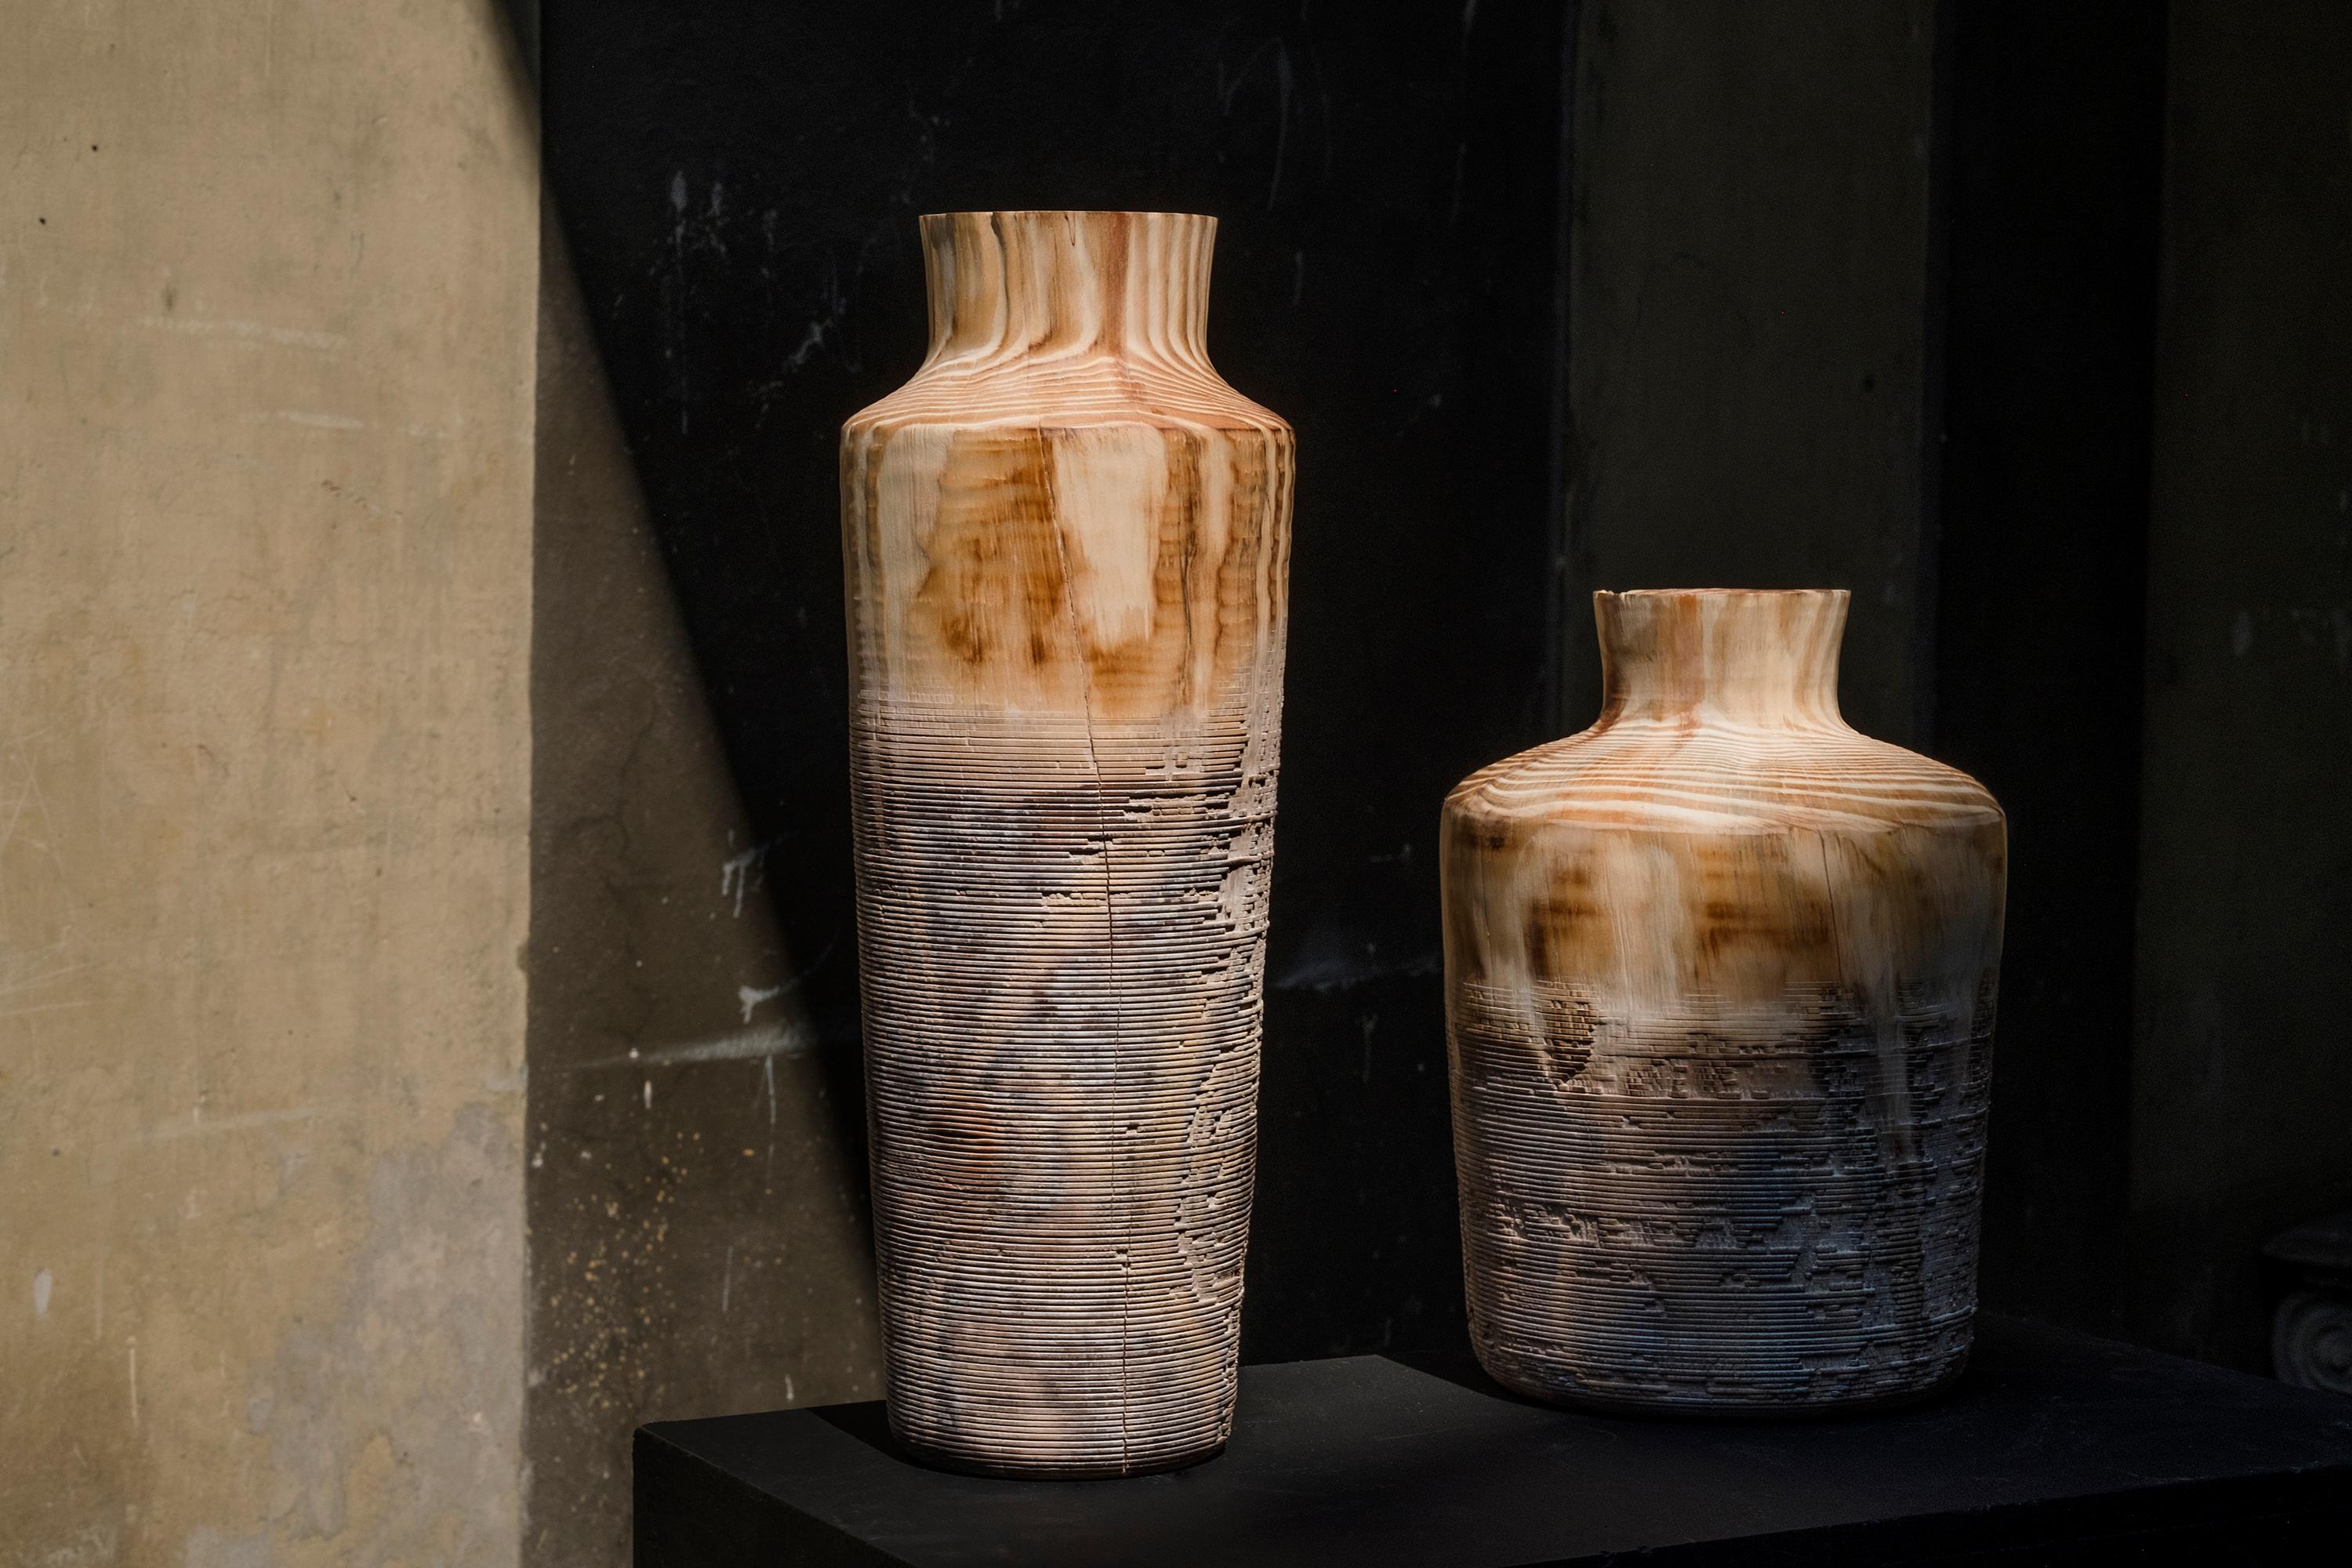 Ce vase en bois de pin est conçu par le studio italien Gumdesign et fabriqué à la main pour Hands on Design par Lorenzo Franceschinis, un tourneur artistique talentueux. La forme est simple et archaïque et la texture est surprenante, passant